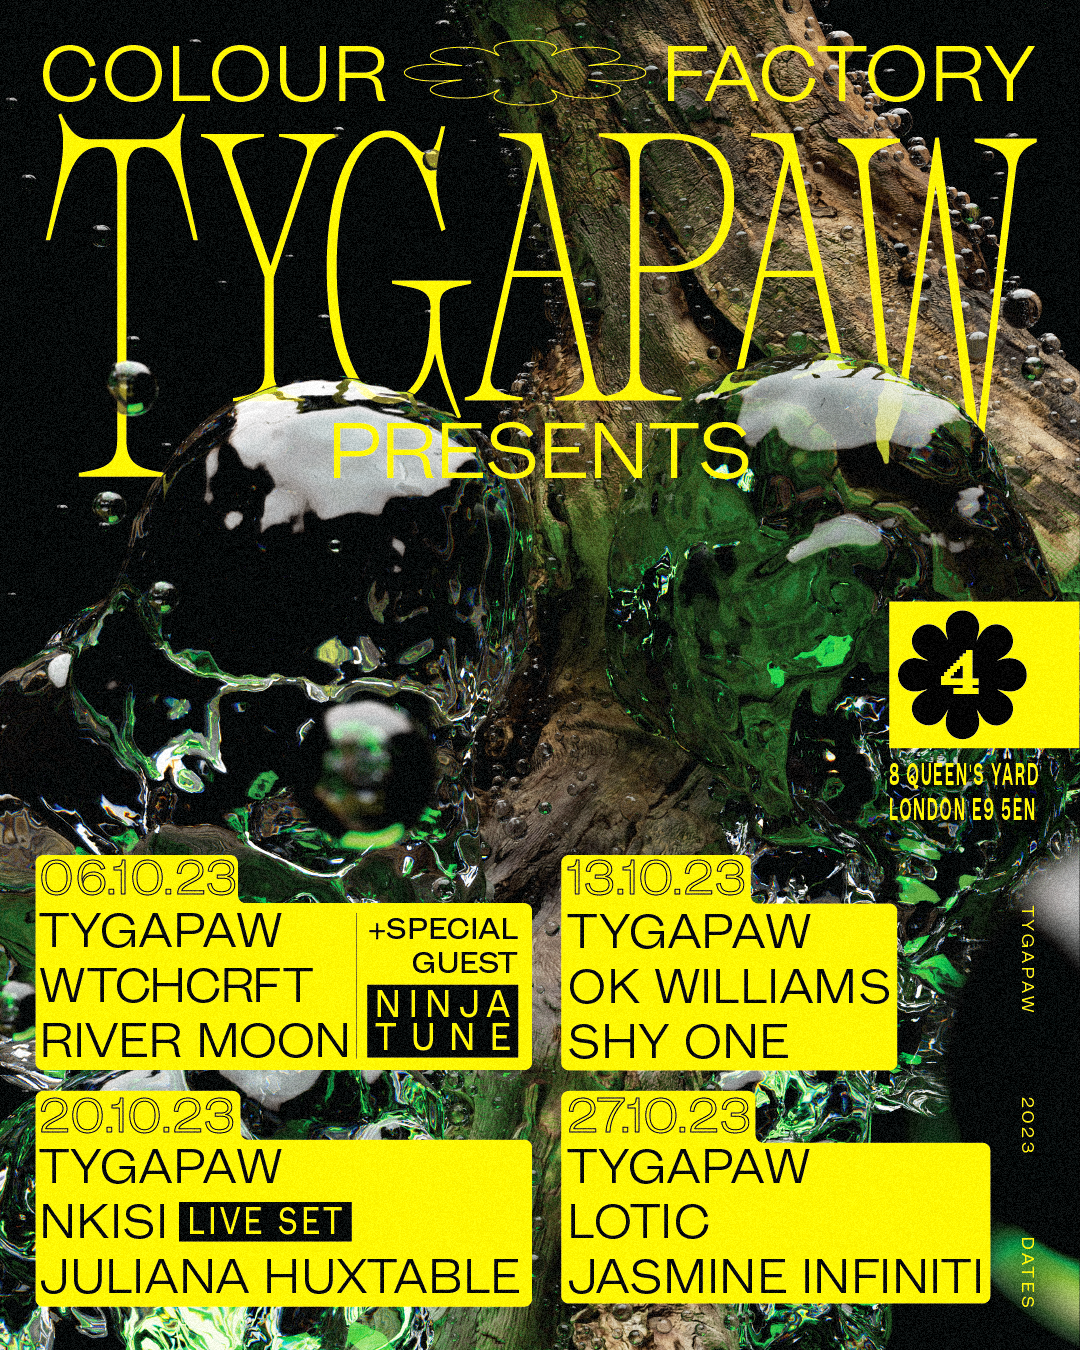 TYGAPAW presents - Página frontal